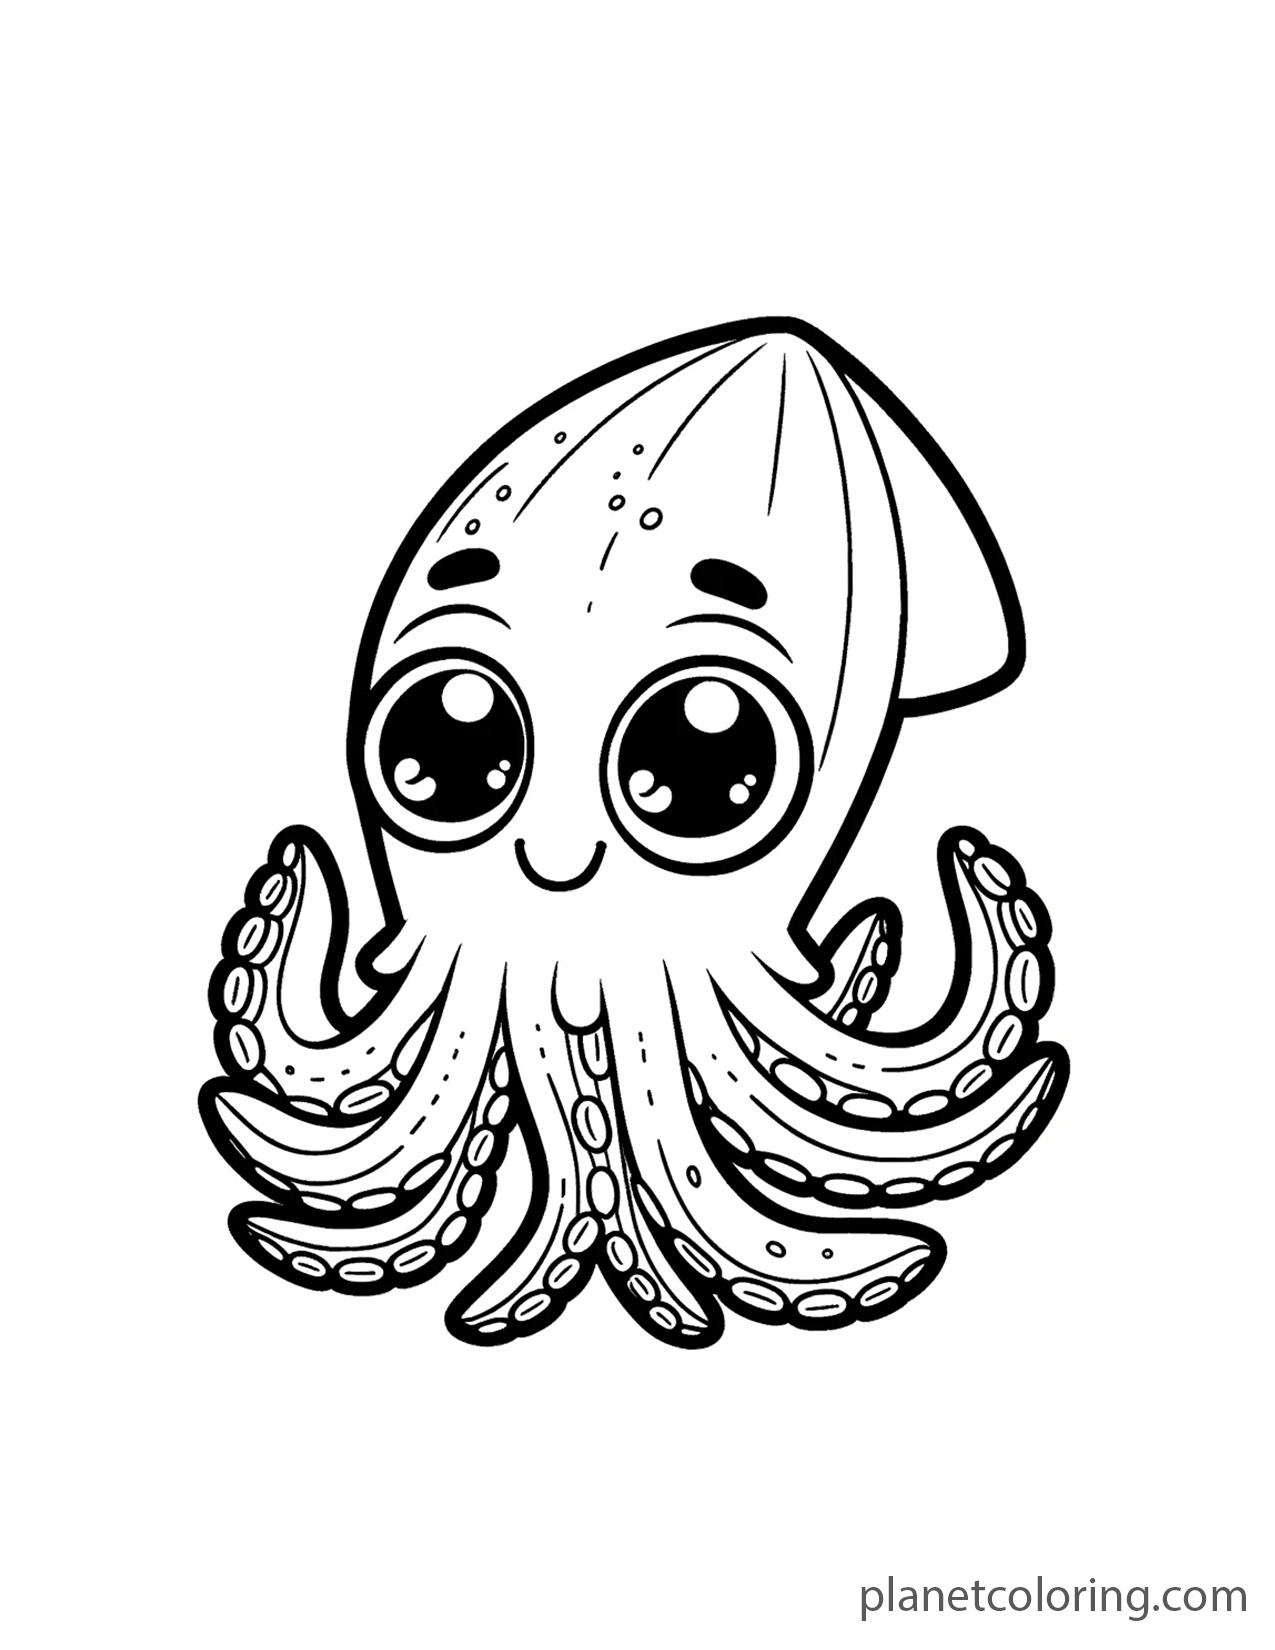 Large-eyed squid